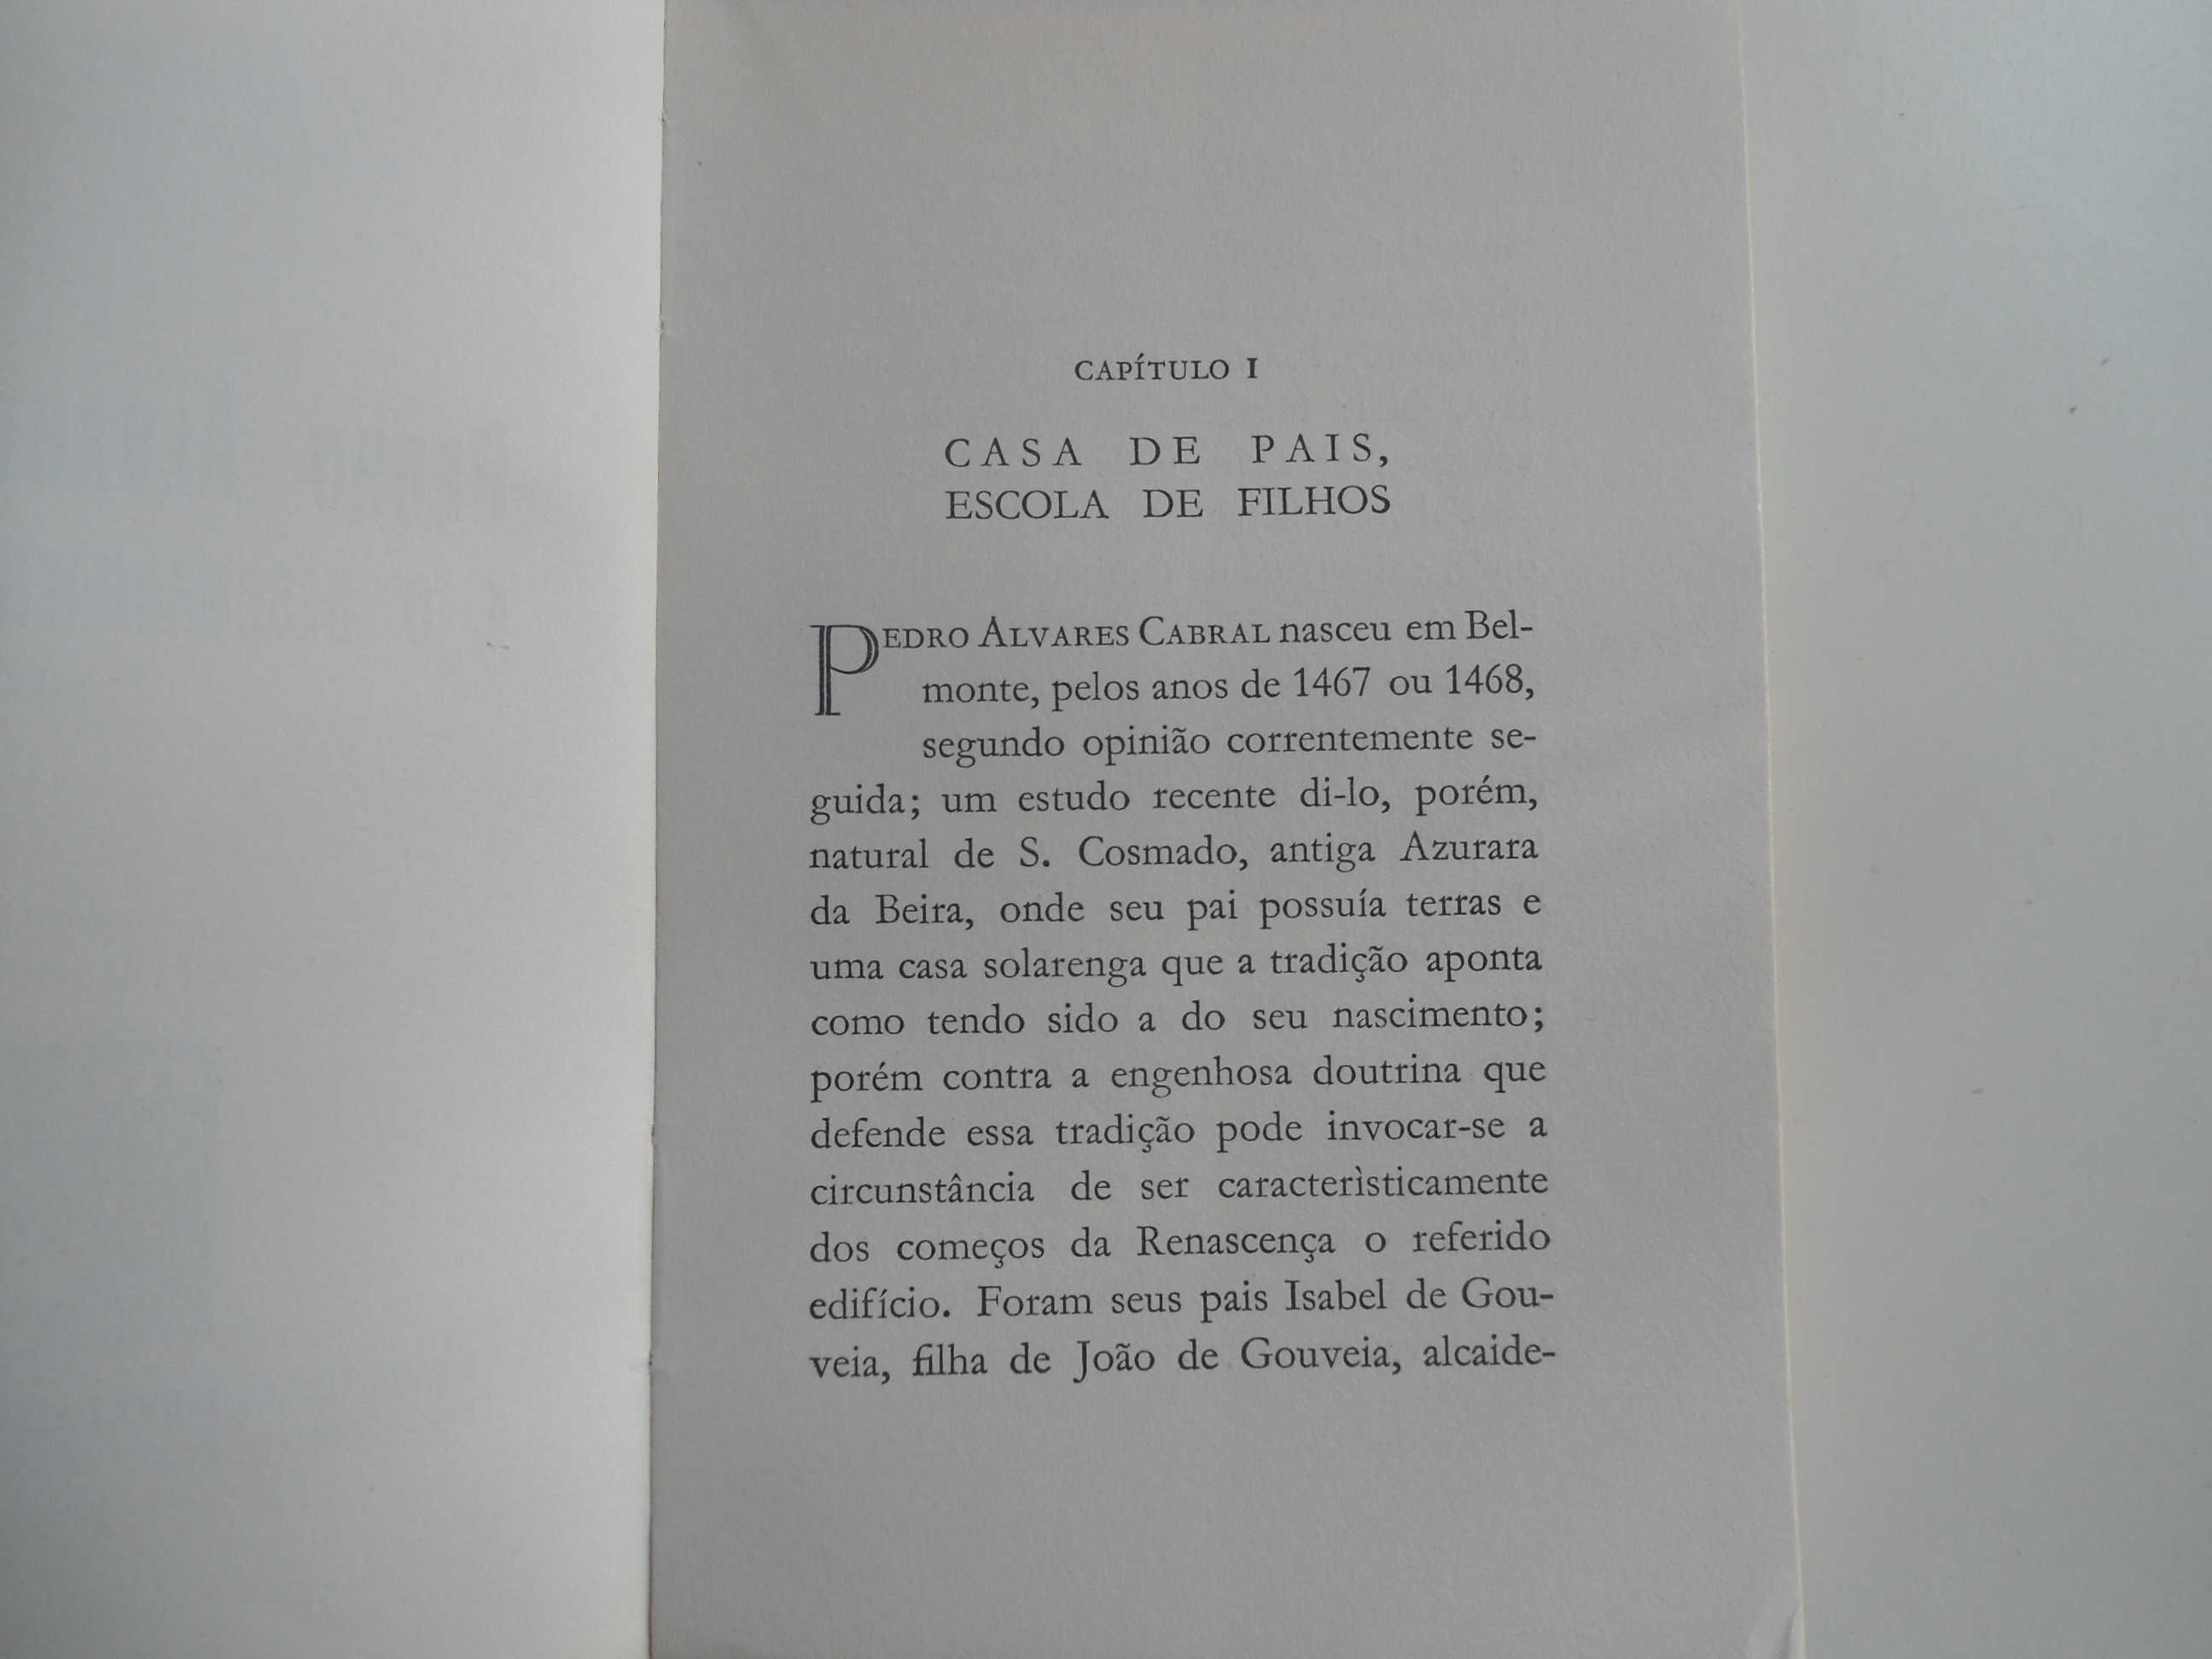 Pedro Álvares Cabral e o descobrimento do Brasil de Damião Peres